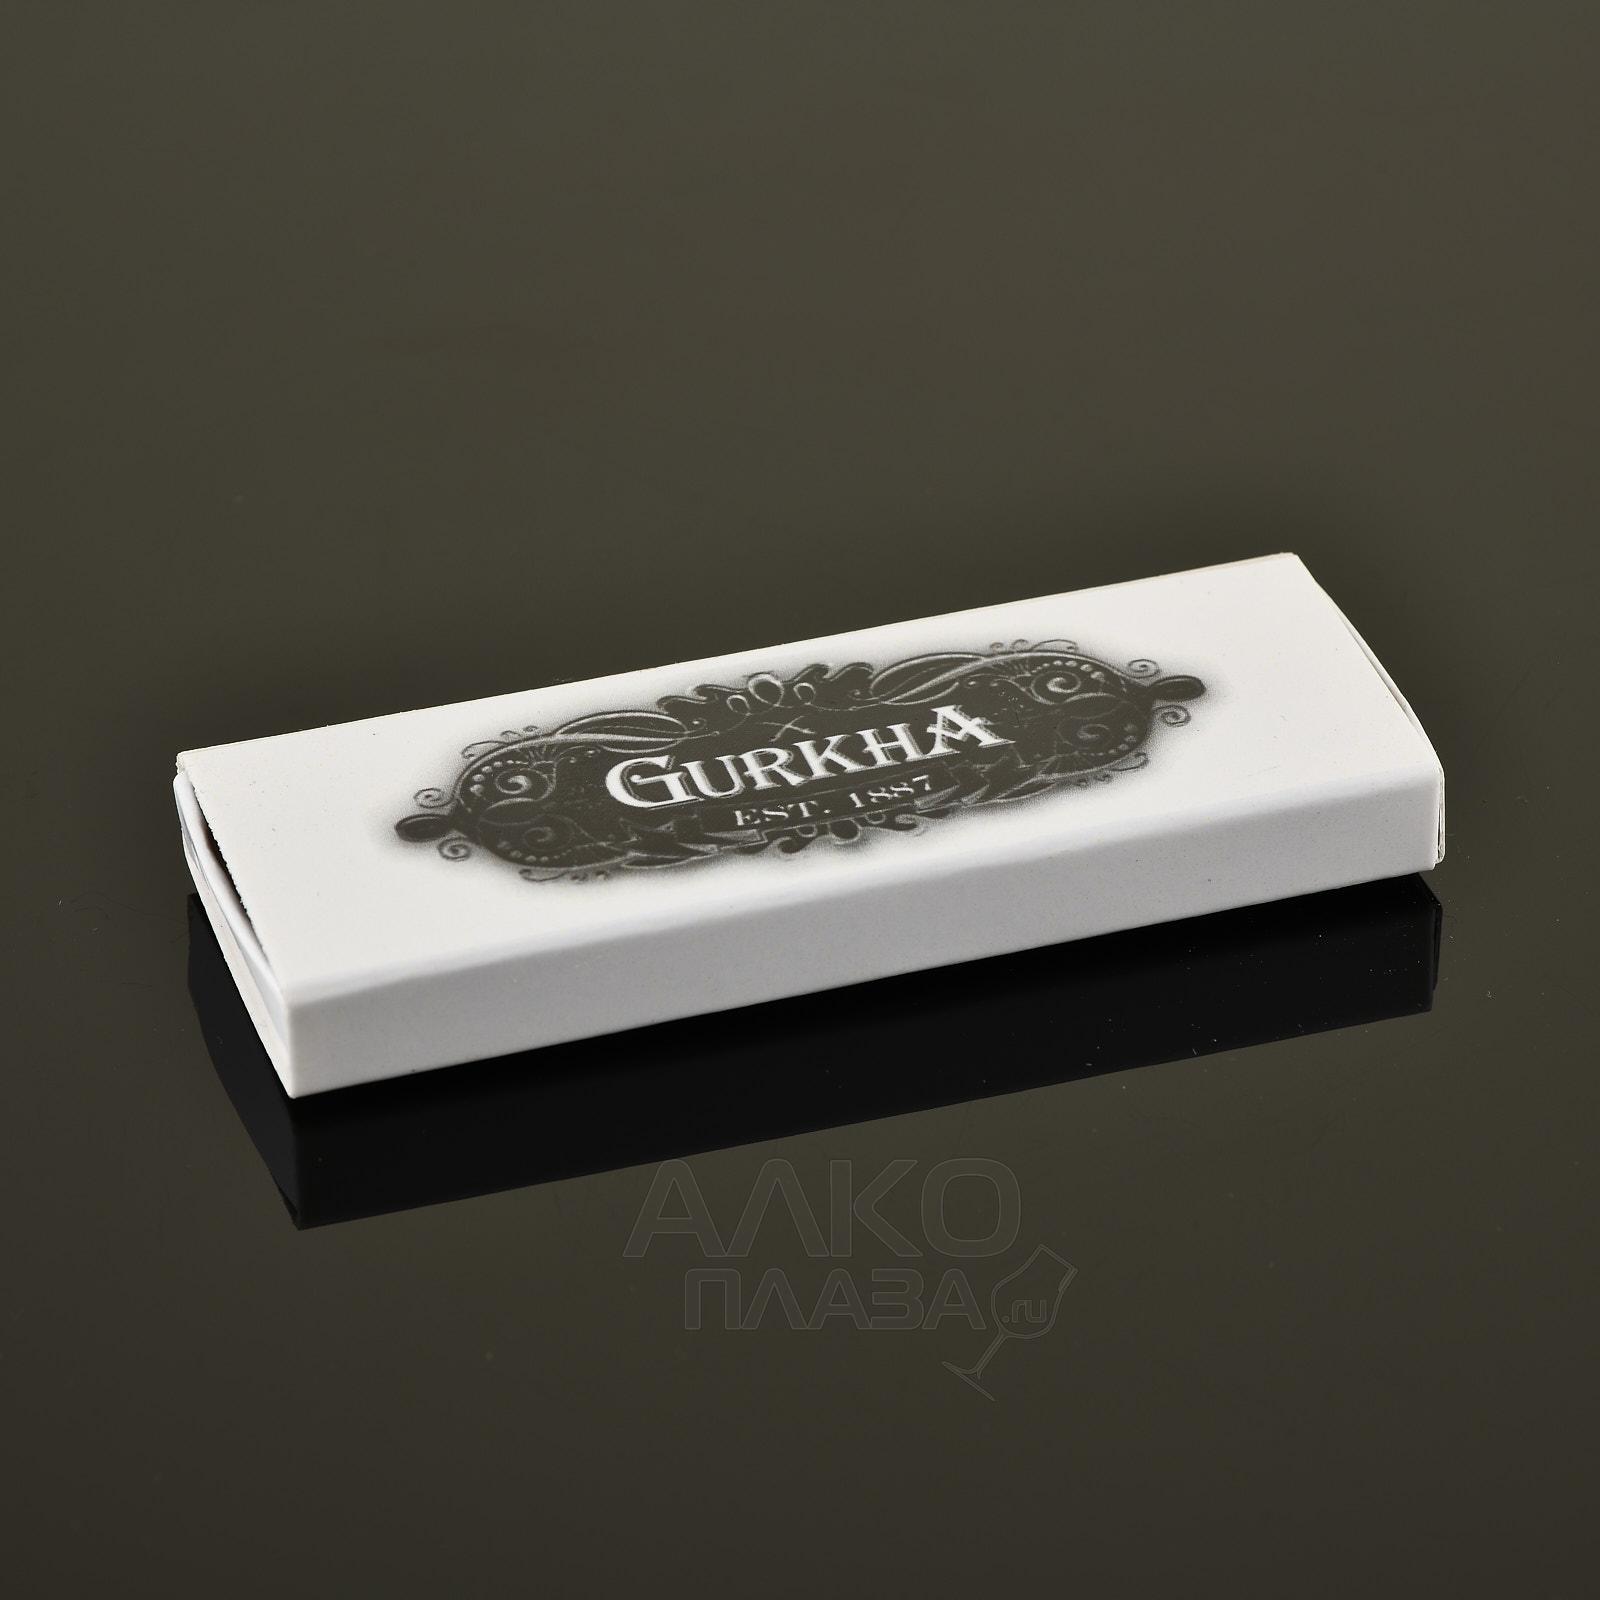  сигарные Gurkha  - цена